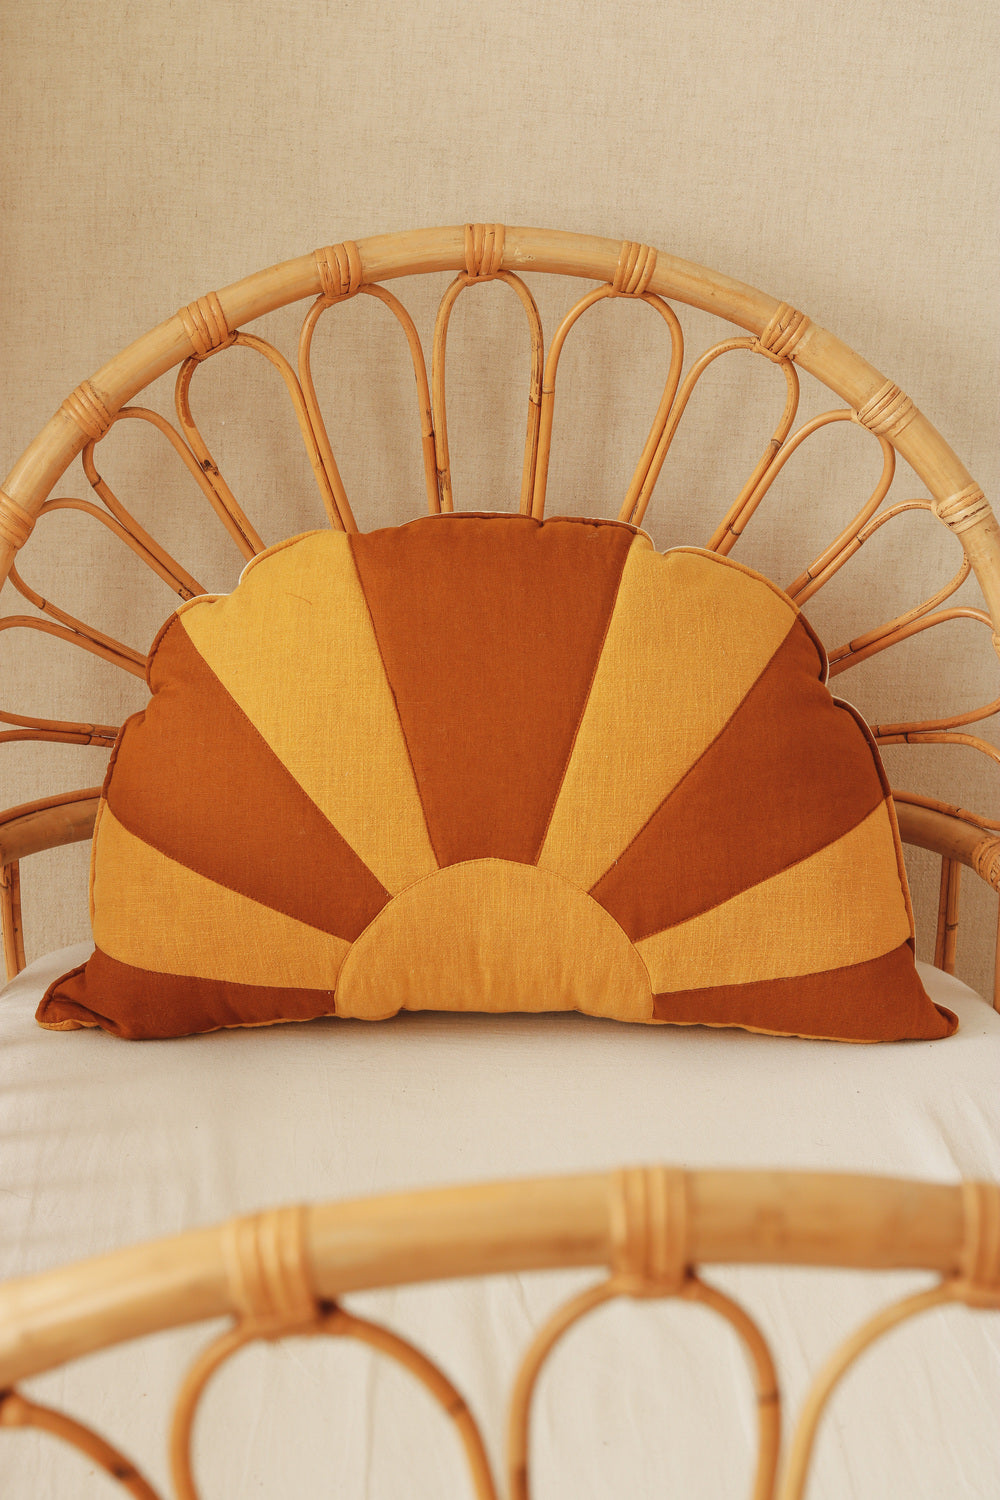 Sun Pillow “Caramel by the Sea” | Kids Room & Nursery Decor